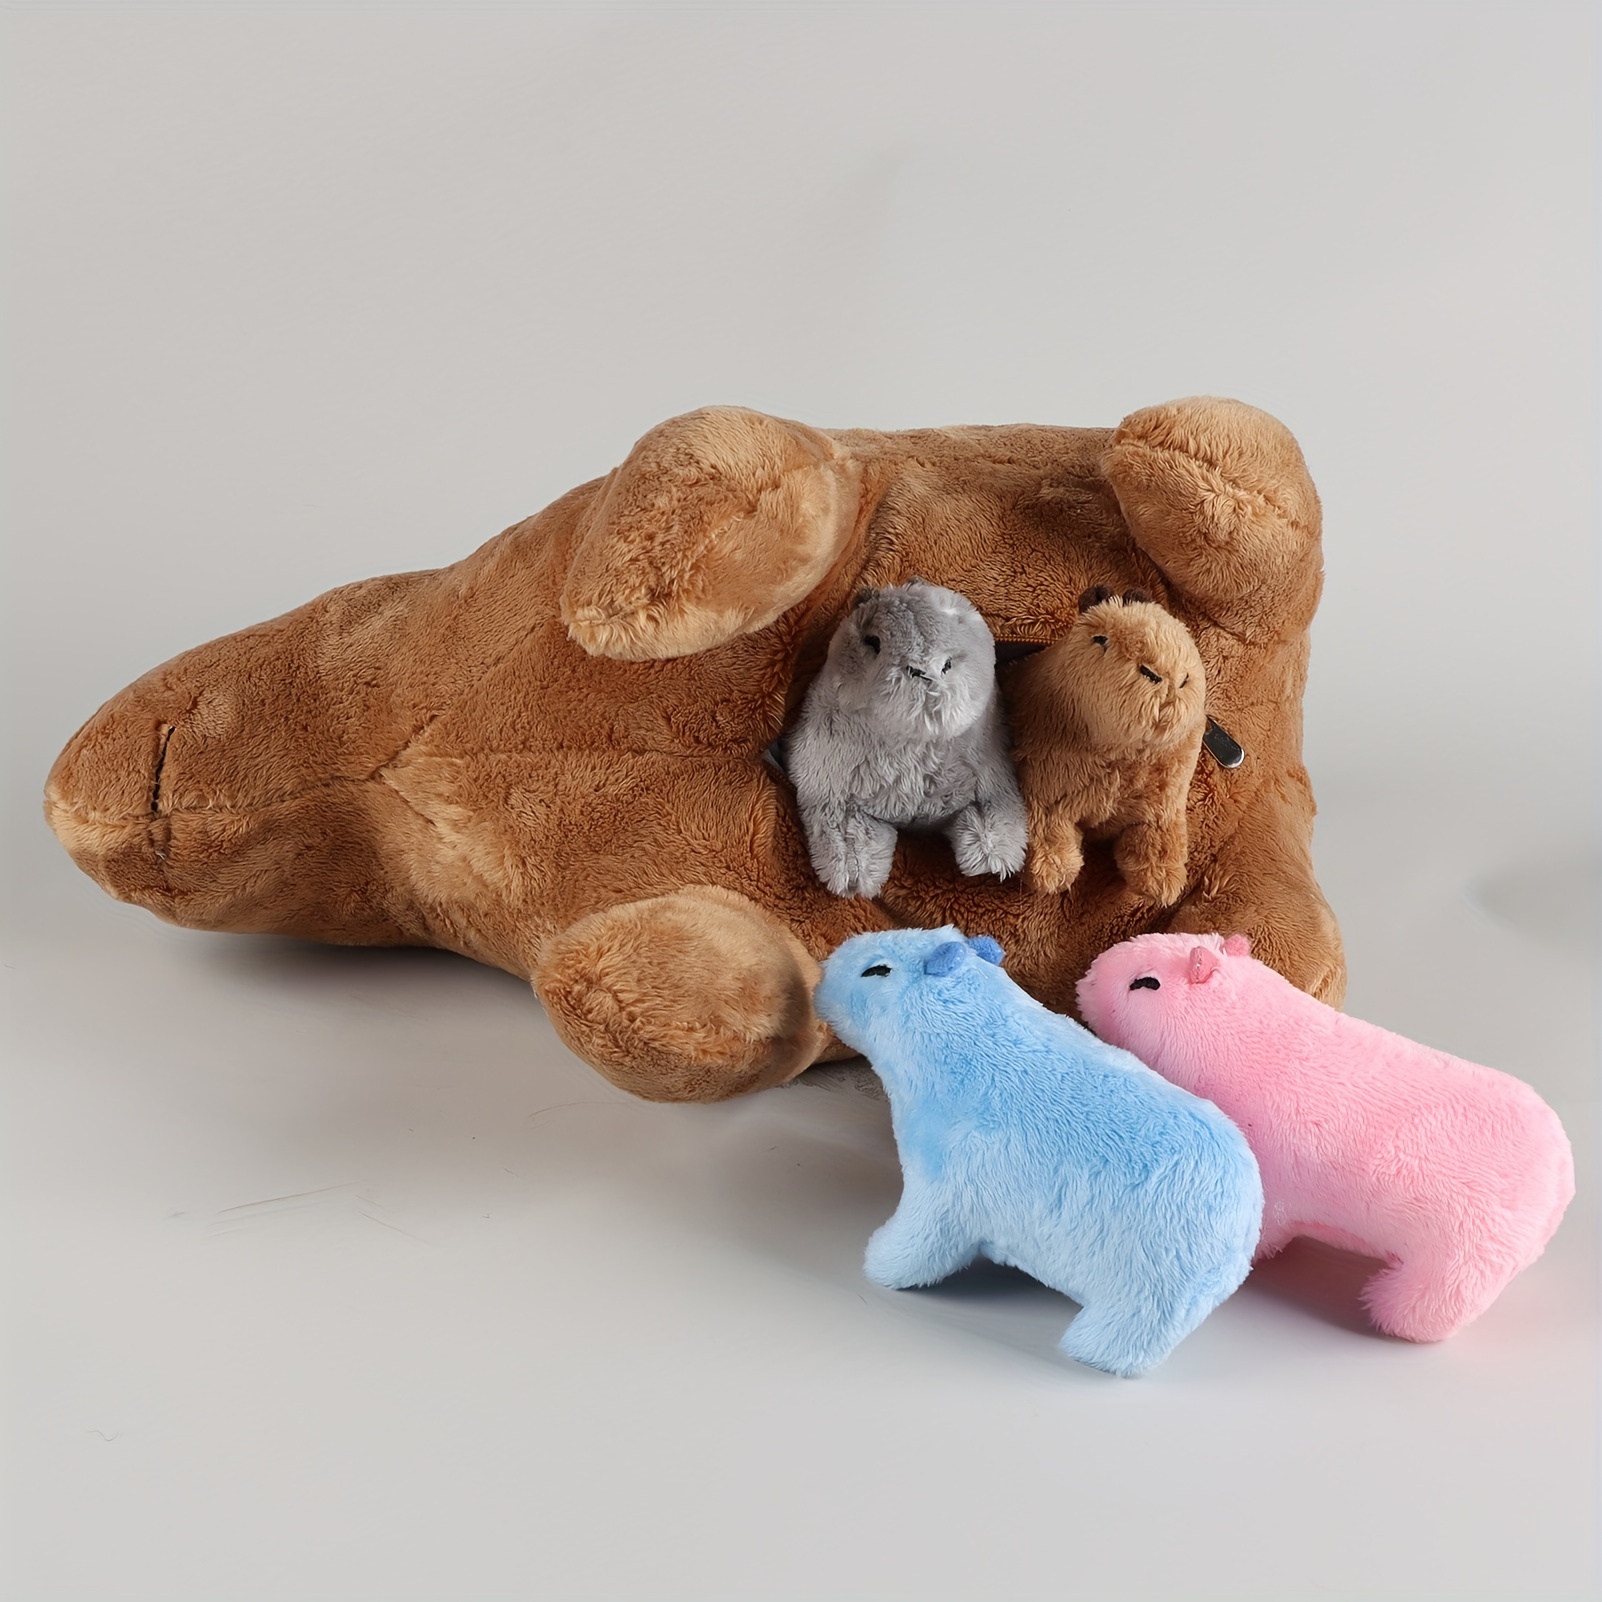 VGEBY Capybara-Plüschtier, Capybara-Stofftier-Puppe, Niedlich, Weich,  Cartoon, Capybara, Nagetier, Plüschtier, Kuscheltiere und Teddybären für